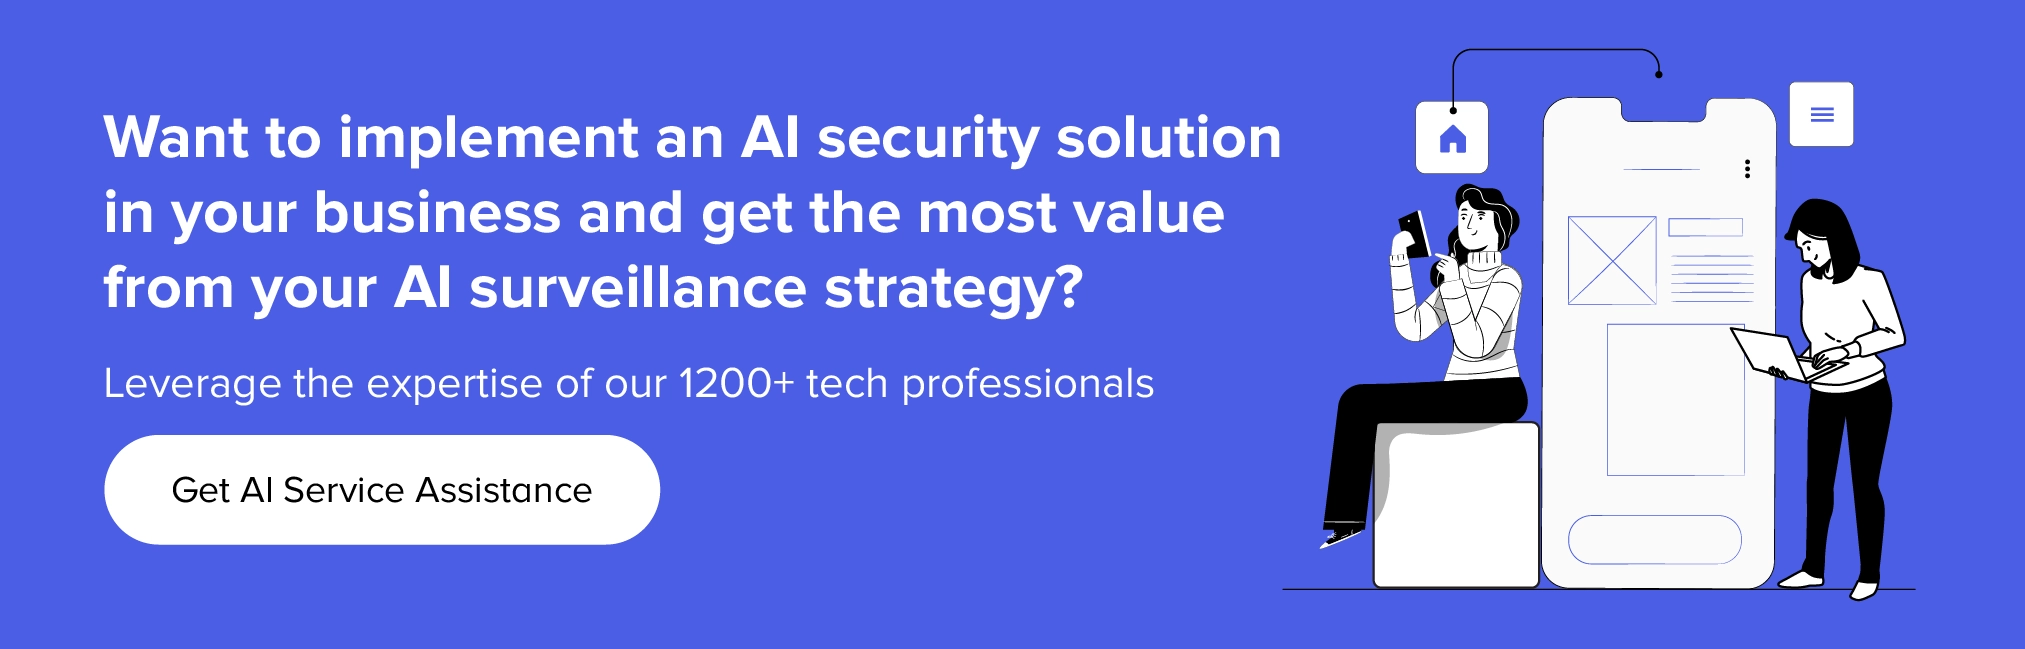 Contate-nos para implementar soluções de segurança de IA em seu negócio